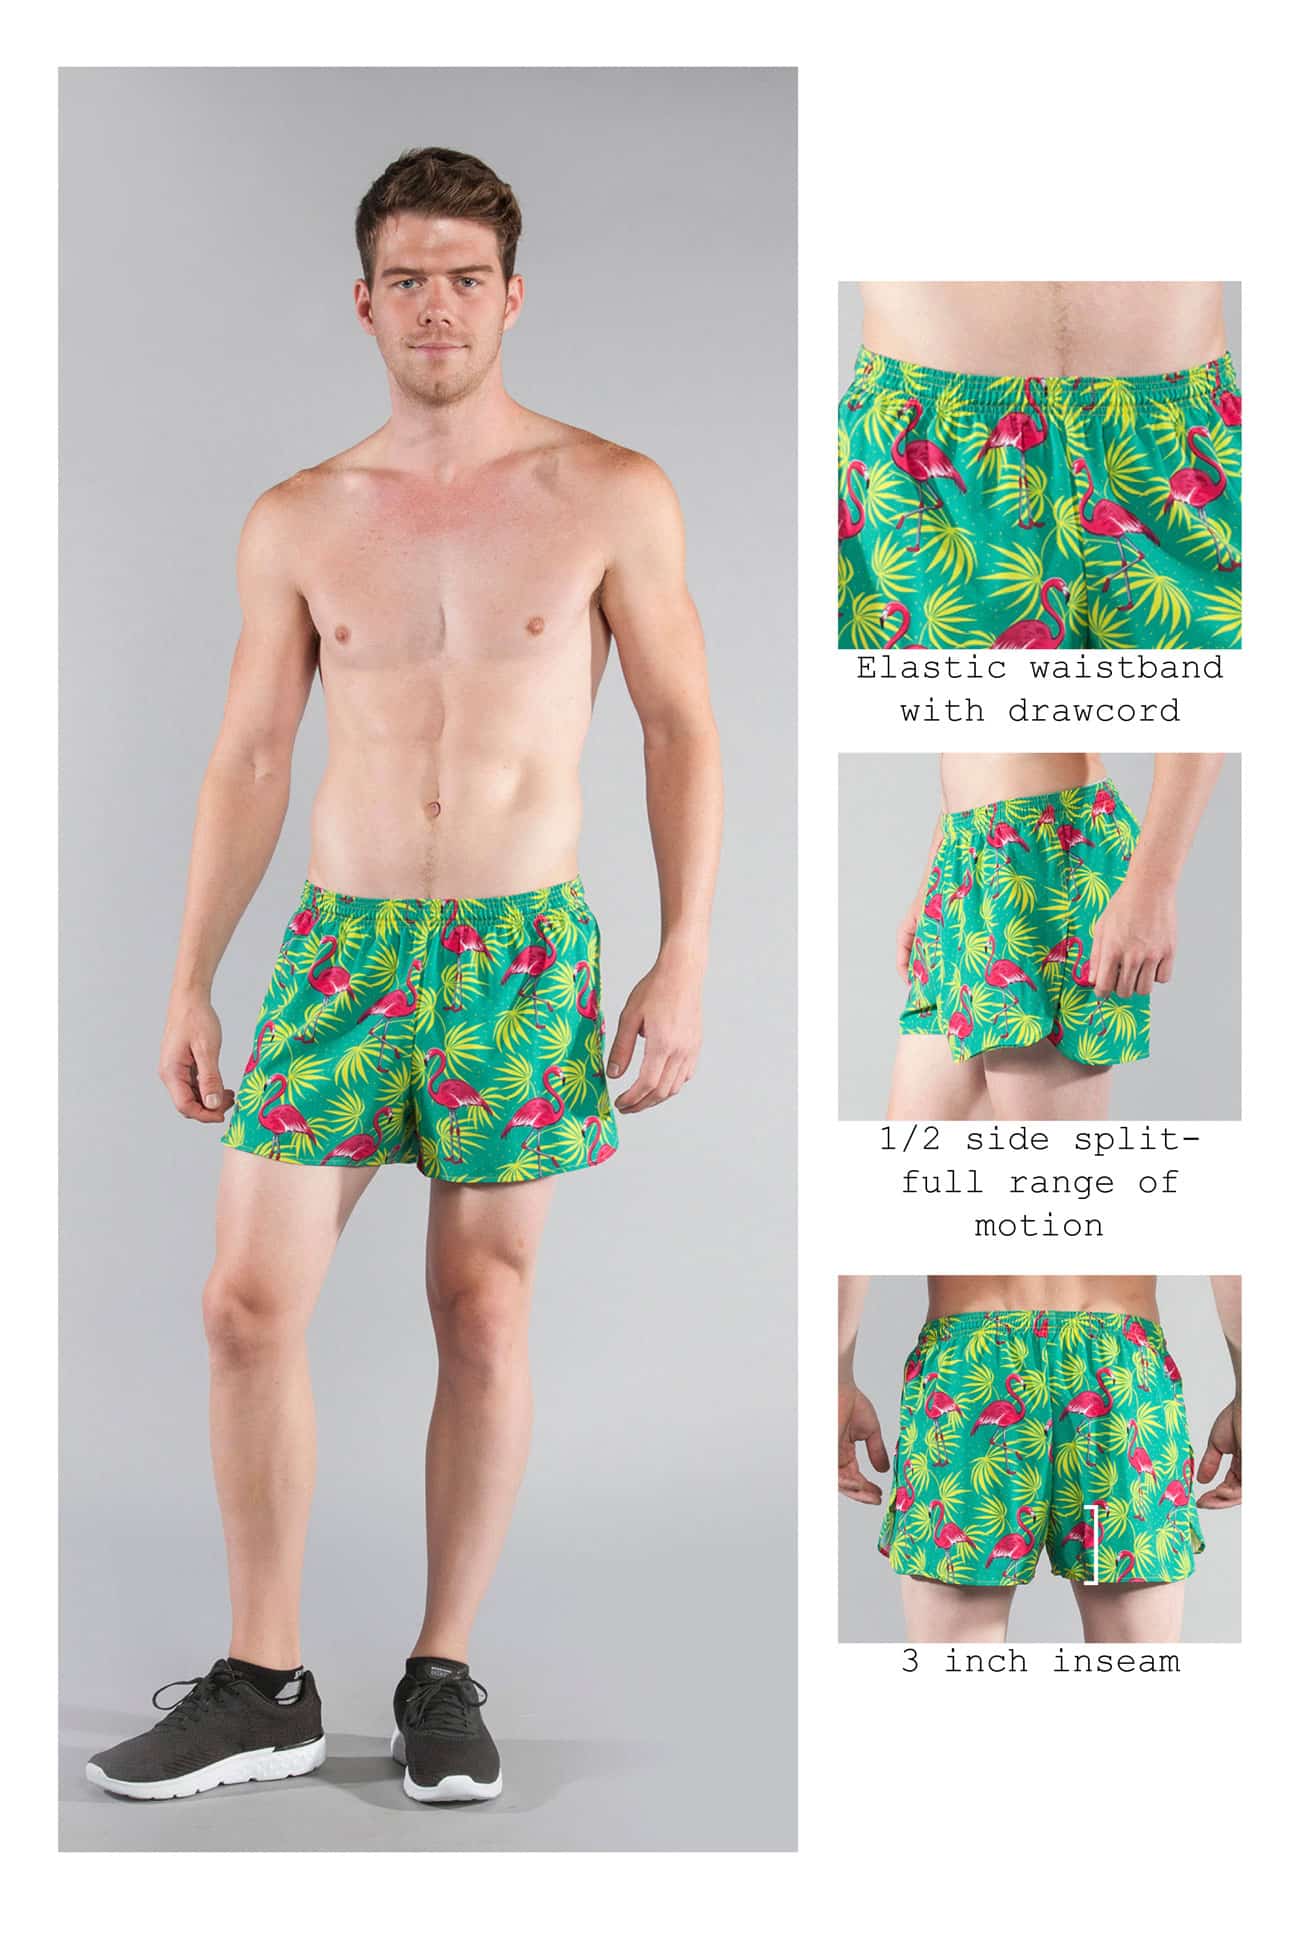 B.O.A Flamingo Green - Herr 3". Gröna Herr shorts med flamingo tryck på. Luftiga och passar perfekt till stranden.